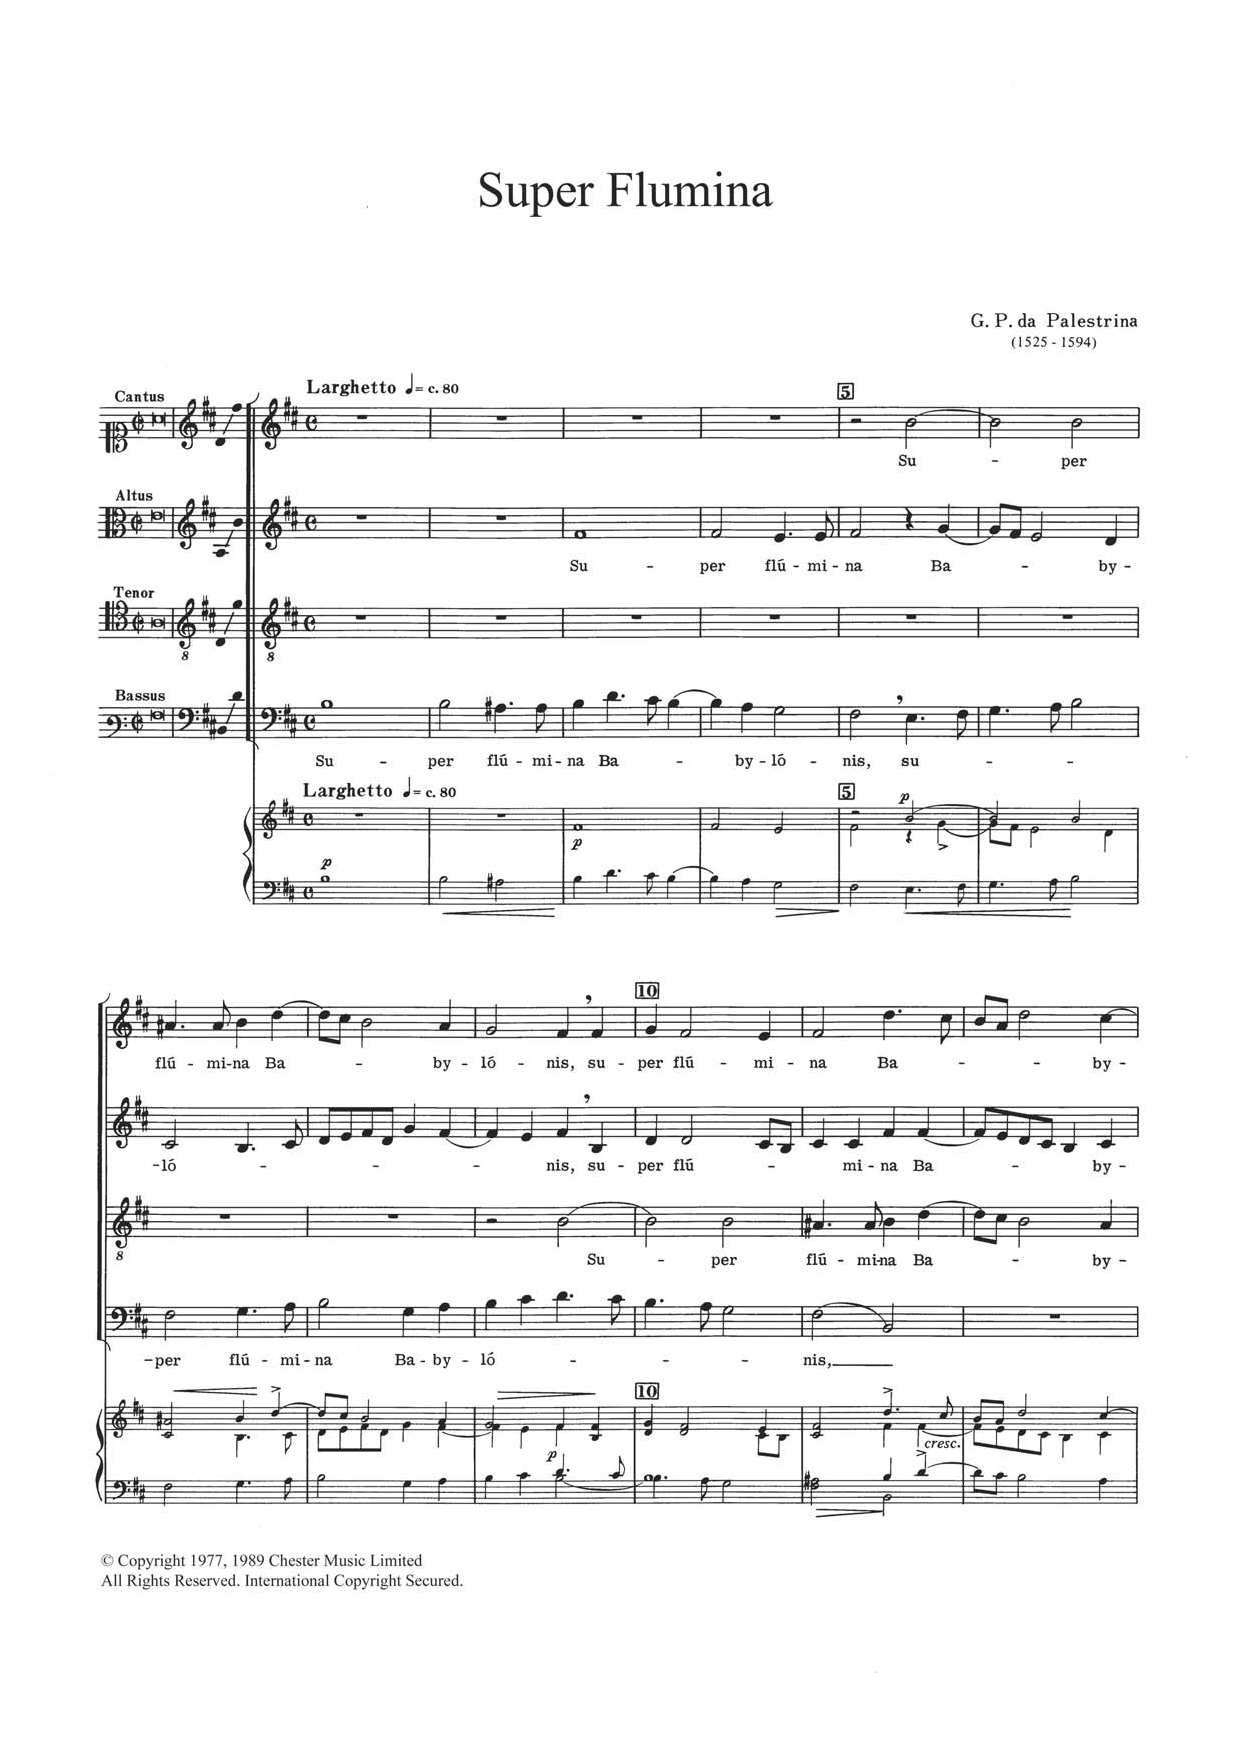 Download Giovanni Palestrina Super Flumina Sheet Music